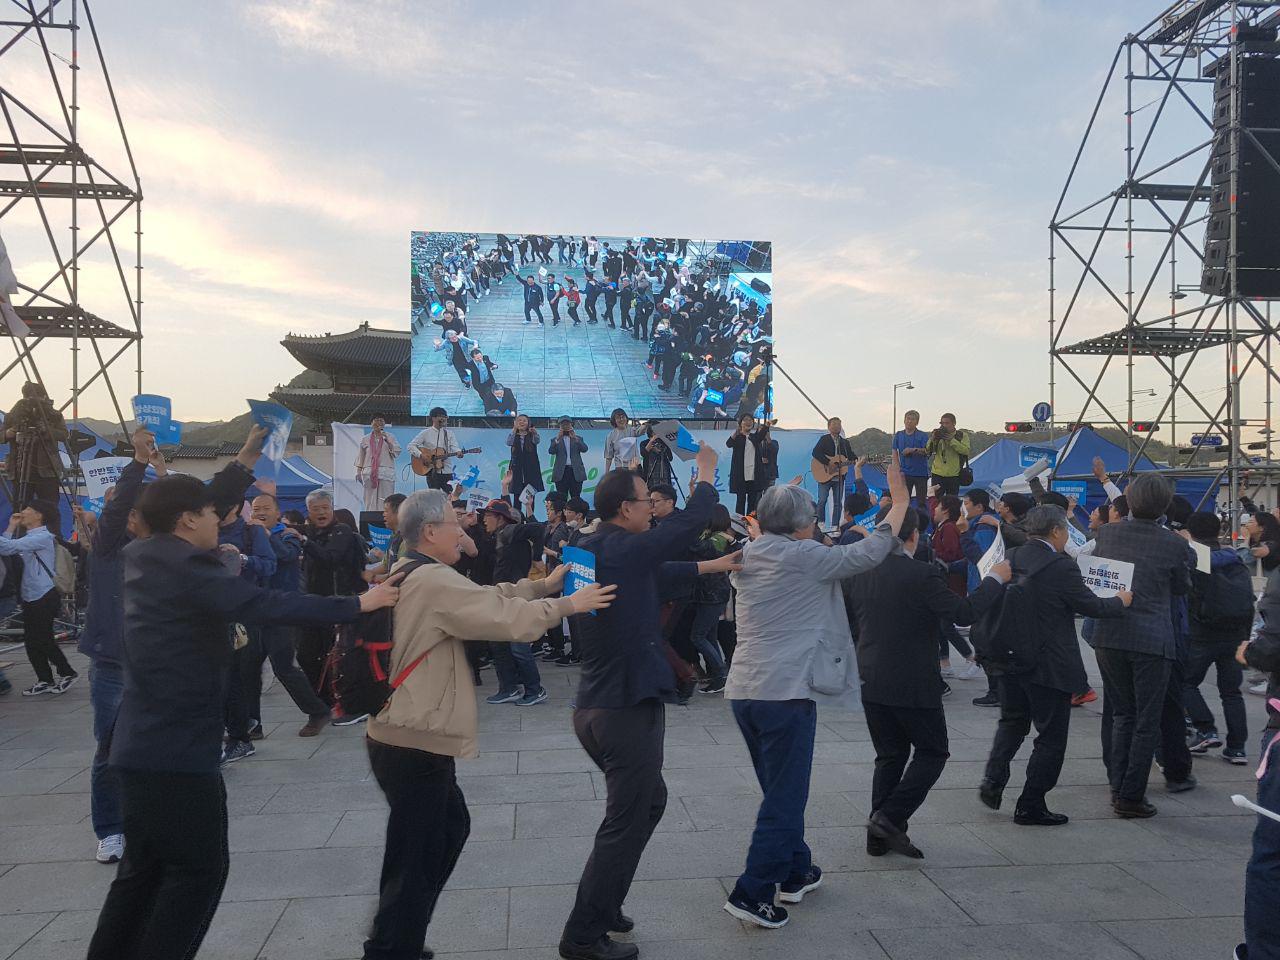 행사에 참가한 시민들이 노래 <경의선 타고>에 맞춰 '기차놀이' 몸짓을 하며 즐거워하고 있다.
